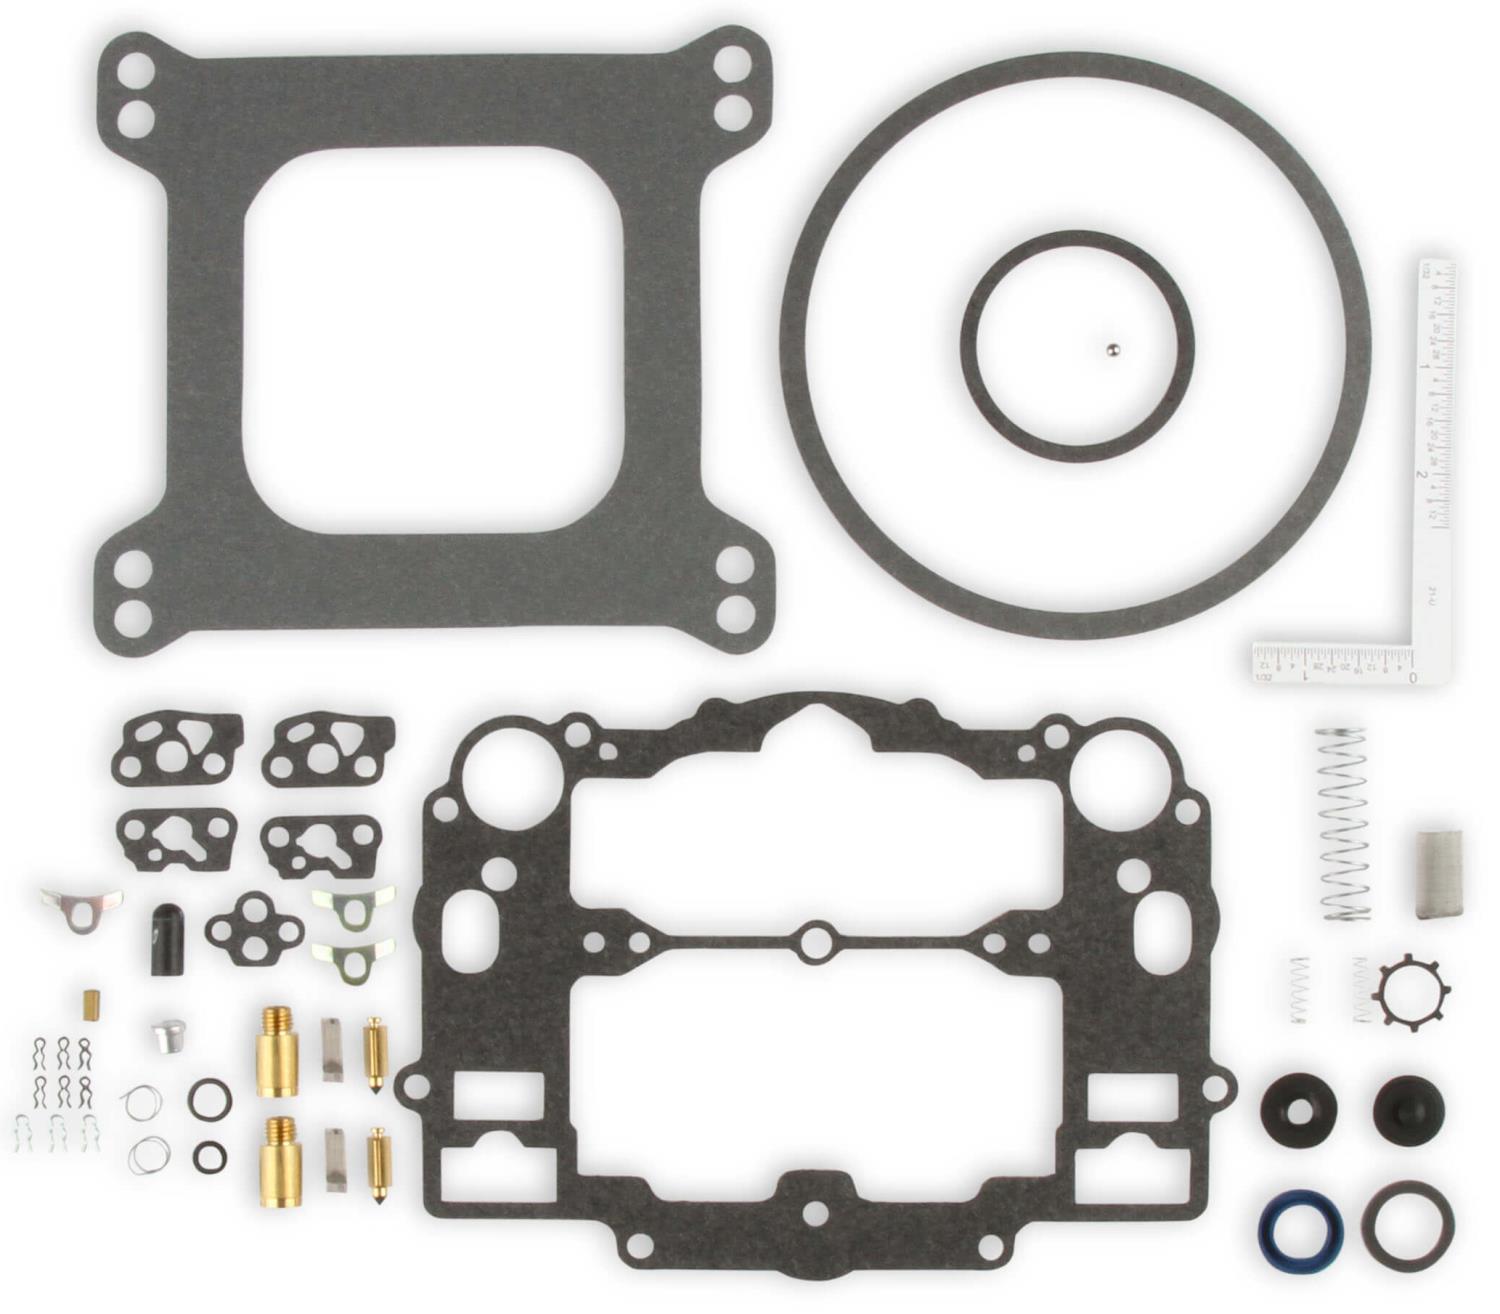 Carburetor Rebuild Kit for Edelbrock Performer Series, Carter AFB Street